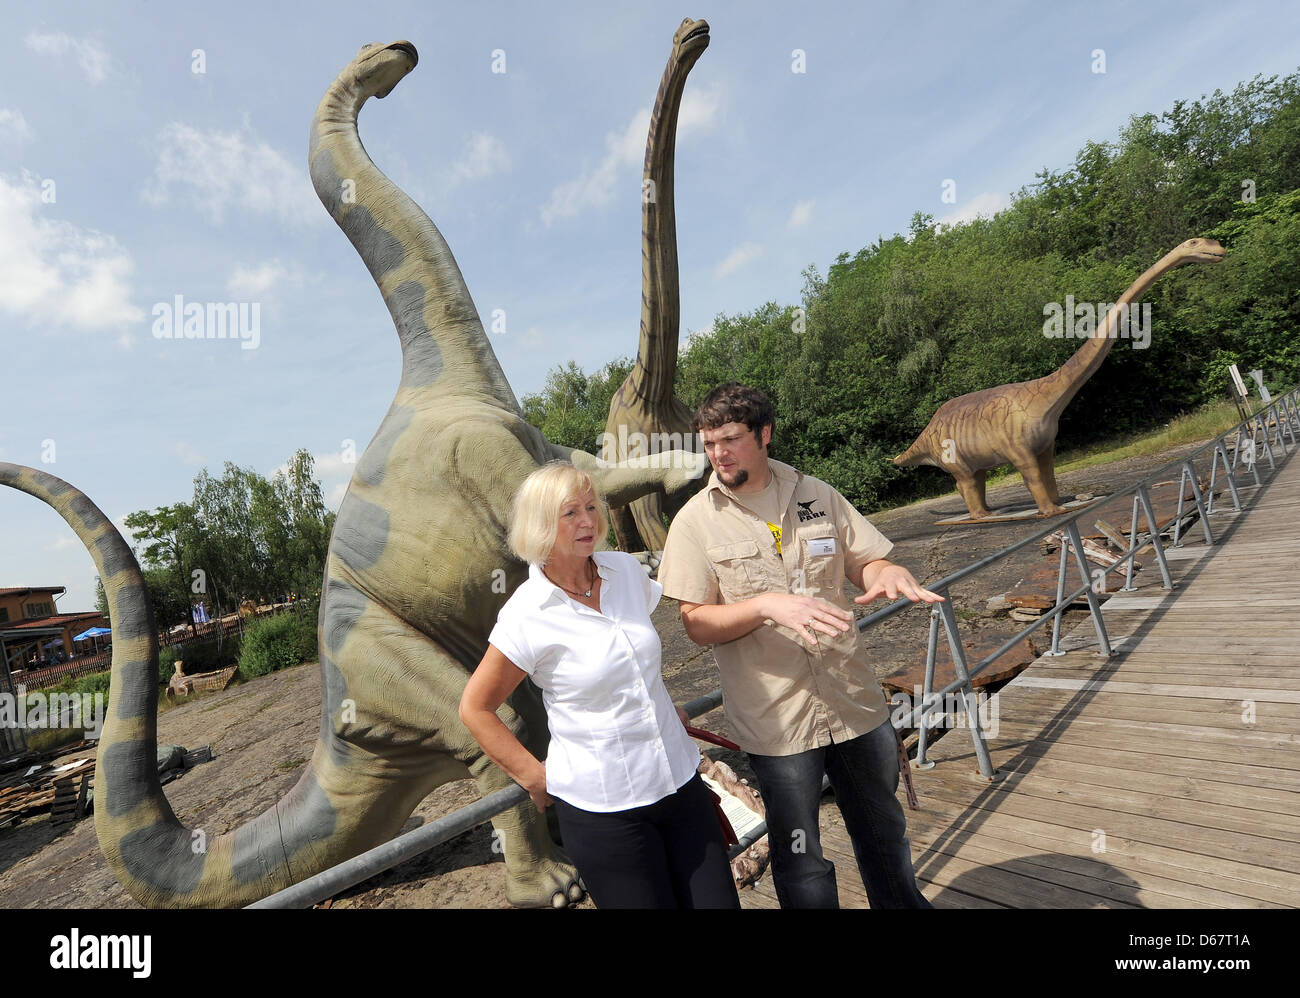 Ministre de la Science de Basse-saxe Johanna Wanka (CDU, L) a chef Nils taxidermiste Knoetschke expliquer certains modèles de dinosaures au Musée de Plein Air de dinosaures dans Muenchehagen, Allemagne, 28 juin 2012. Un squelette complet d'un Nain Europasaurus est vu dans l'arrière-plan. Wanka a visité plusieurs sites de fouilles de dinosaures en Basse-Saxe. Photo : Holger Hollemann Banque D'Images